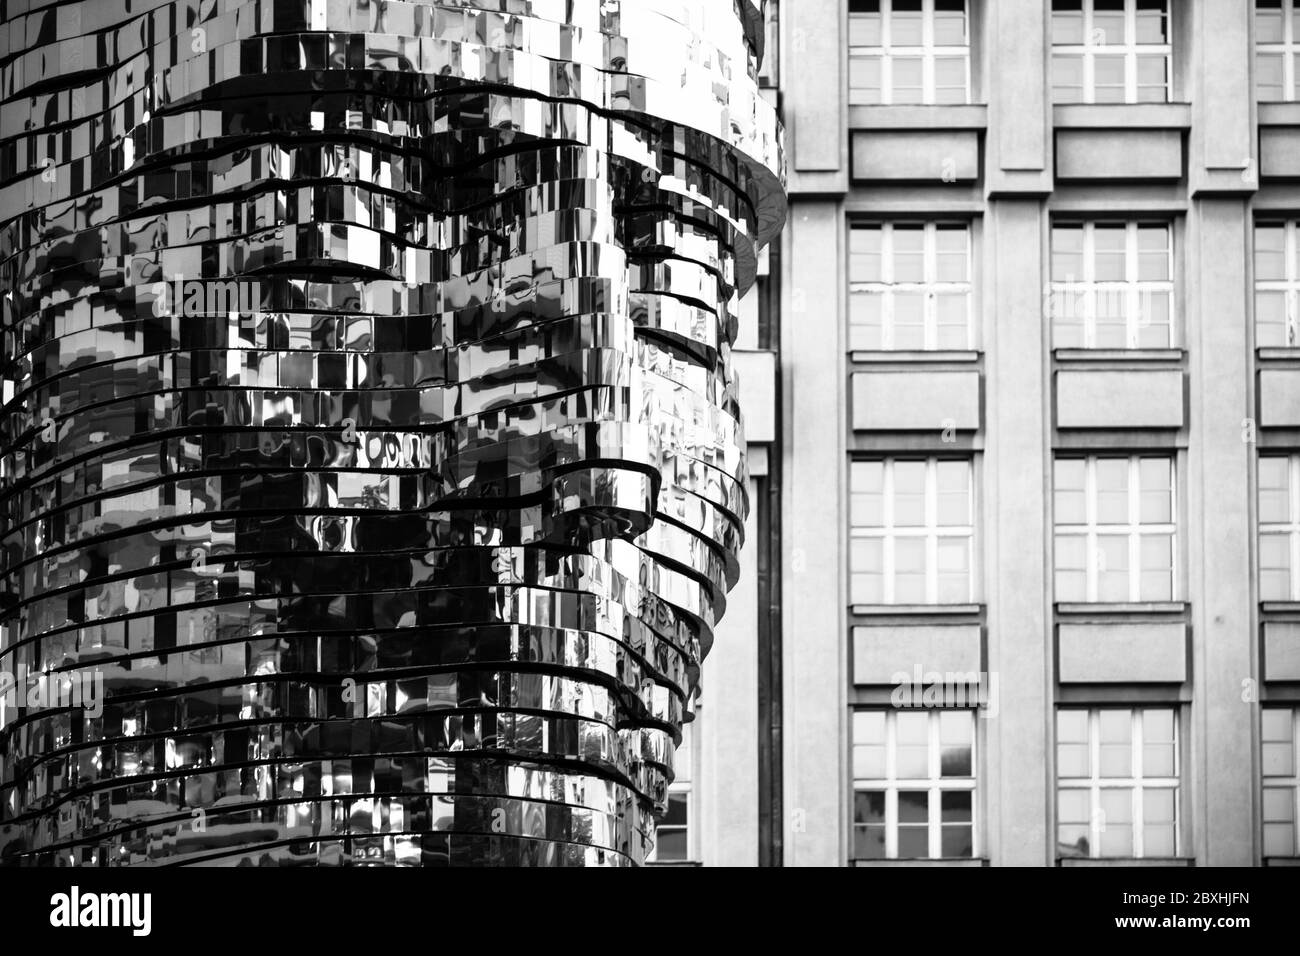 PRAGUE, RÉPUBLIQUE TCHÈQUE - 17 AOÛT 2018 : statue de Franz Kafka. Sculpture mécanique en métal brillant du célèbre écrivain tchèque. Buste de l'artiste David Cerny. Prague, République tchèque. Image en noir et blanc. Banque D'Images